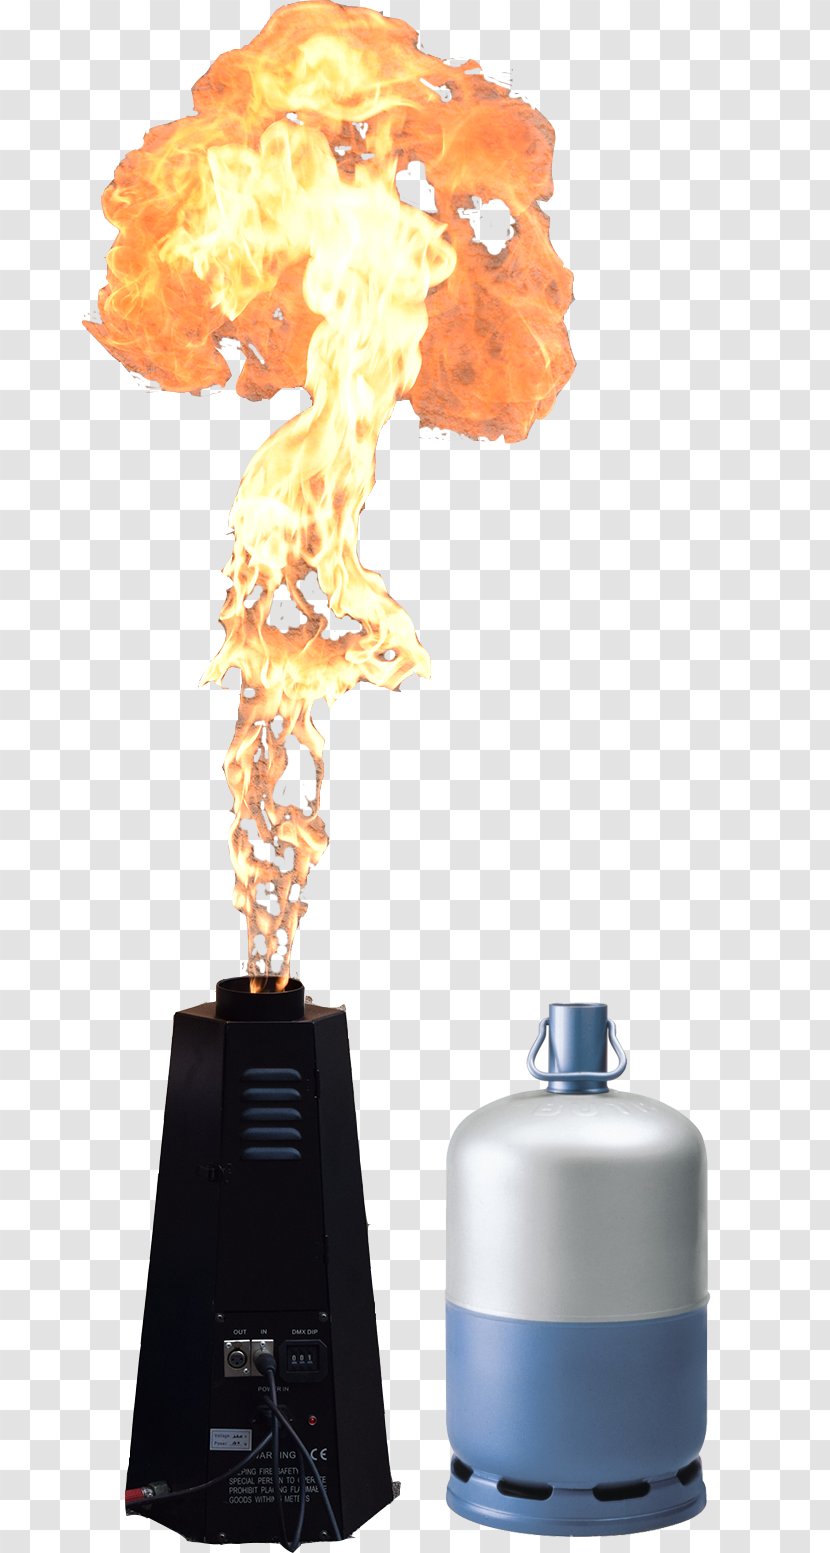 Gas Cylinder Butane Liquefied Petroleum Flame - Cartouche De Gaz Transparent PNG